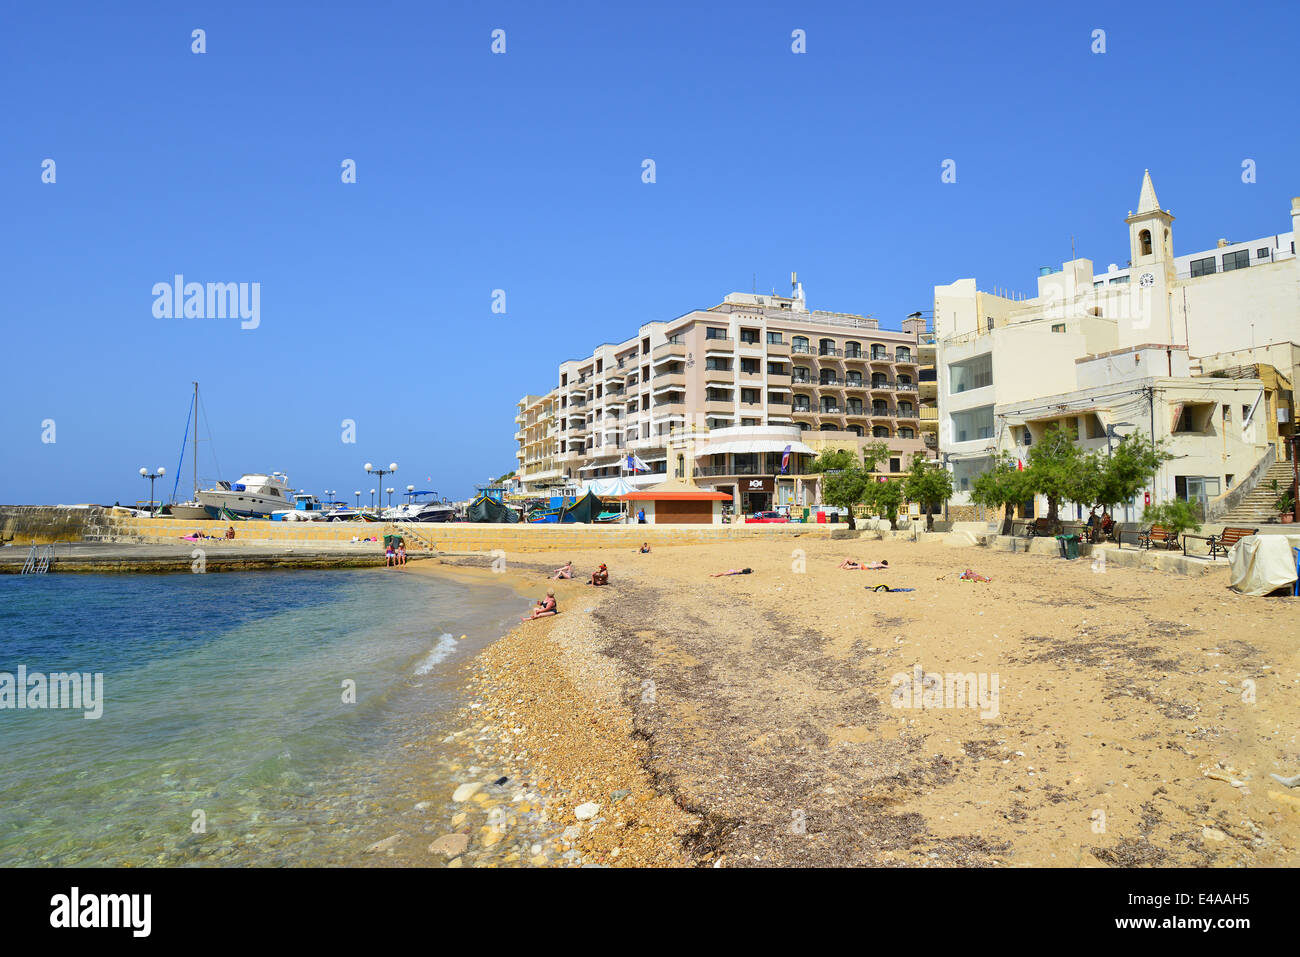 Vue sur la plage, Marsalforn, Gozo (Għawdex), région de Gozo, République de Malte Banque D'Images